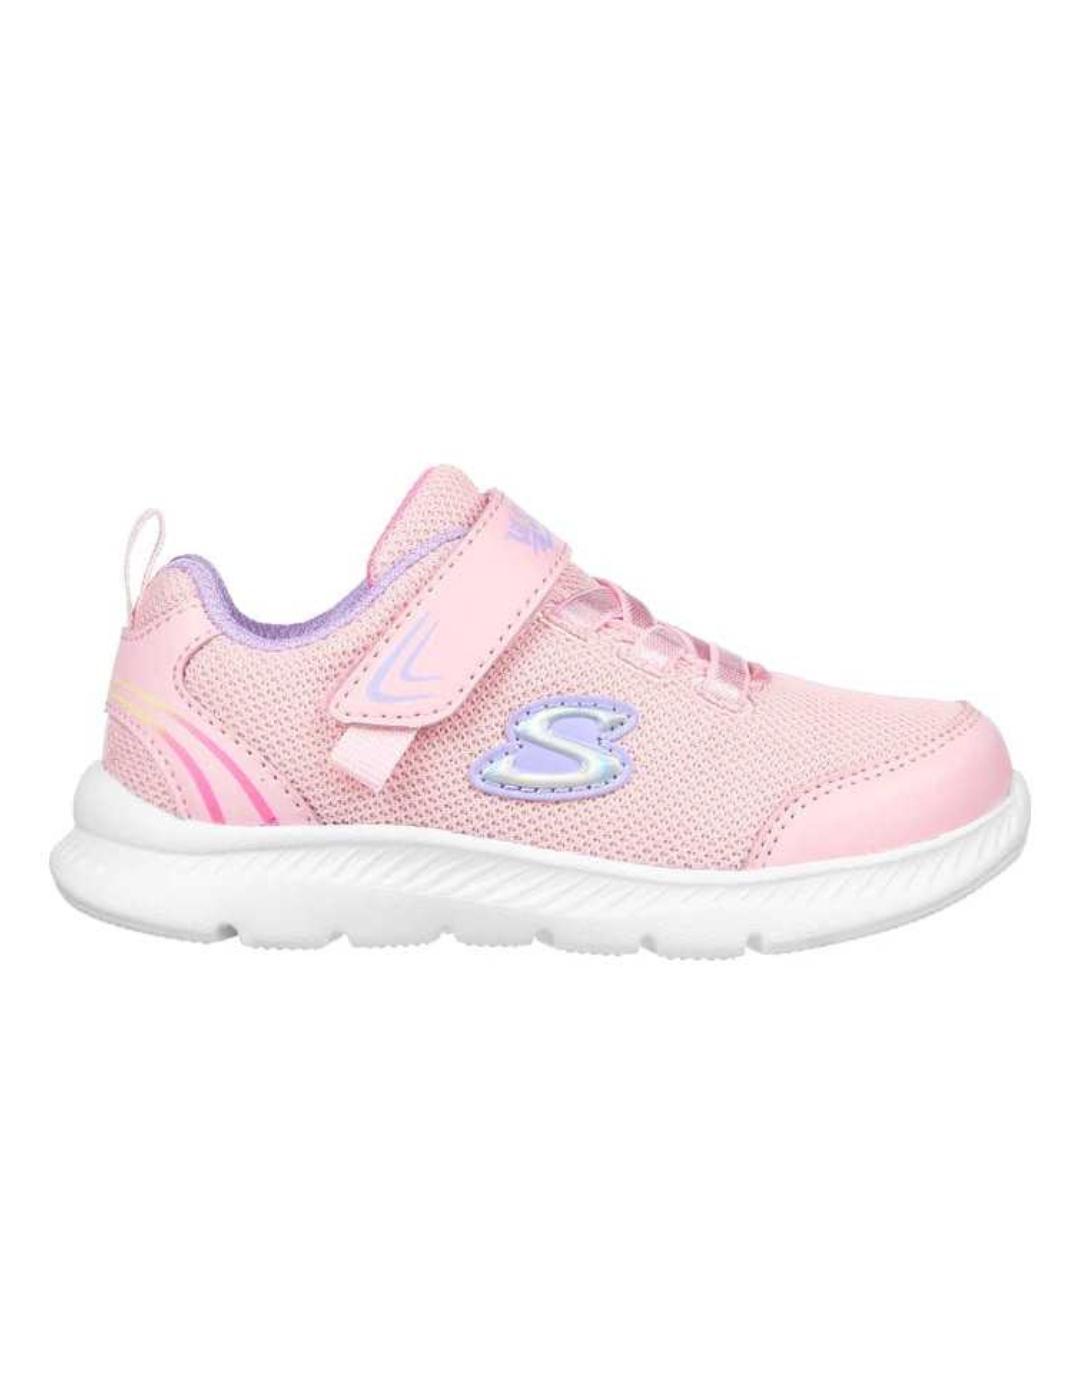 Zapatillas skechers comfy flex 2.0 happy stride rosa de bebé